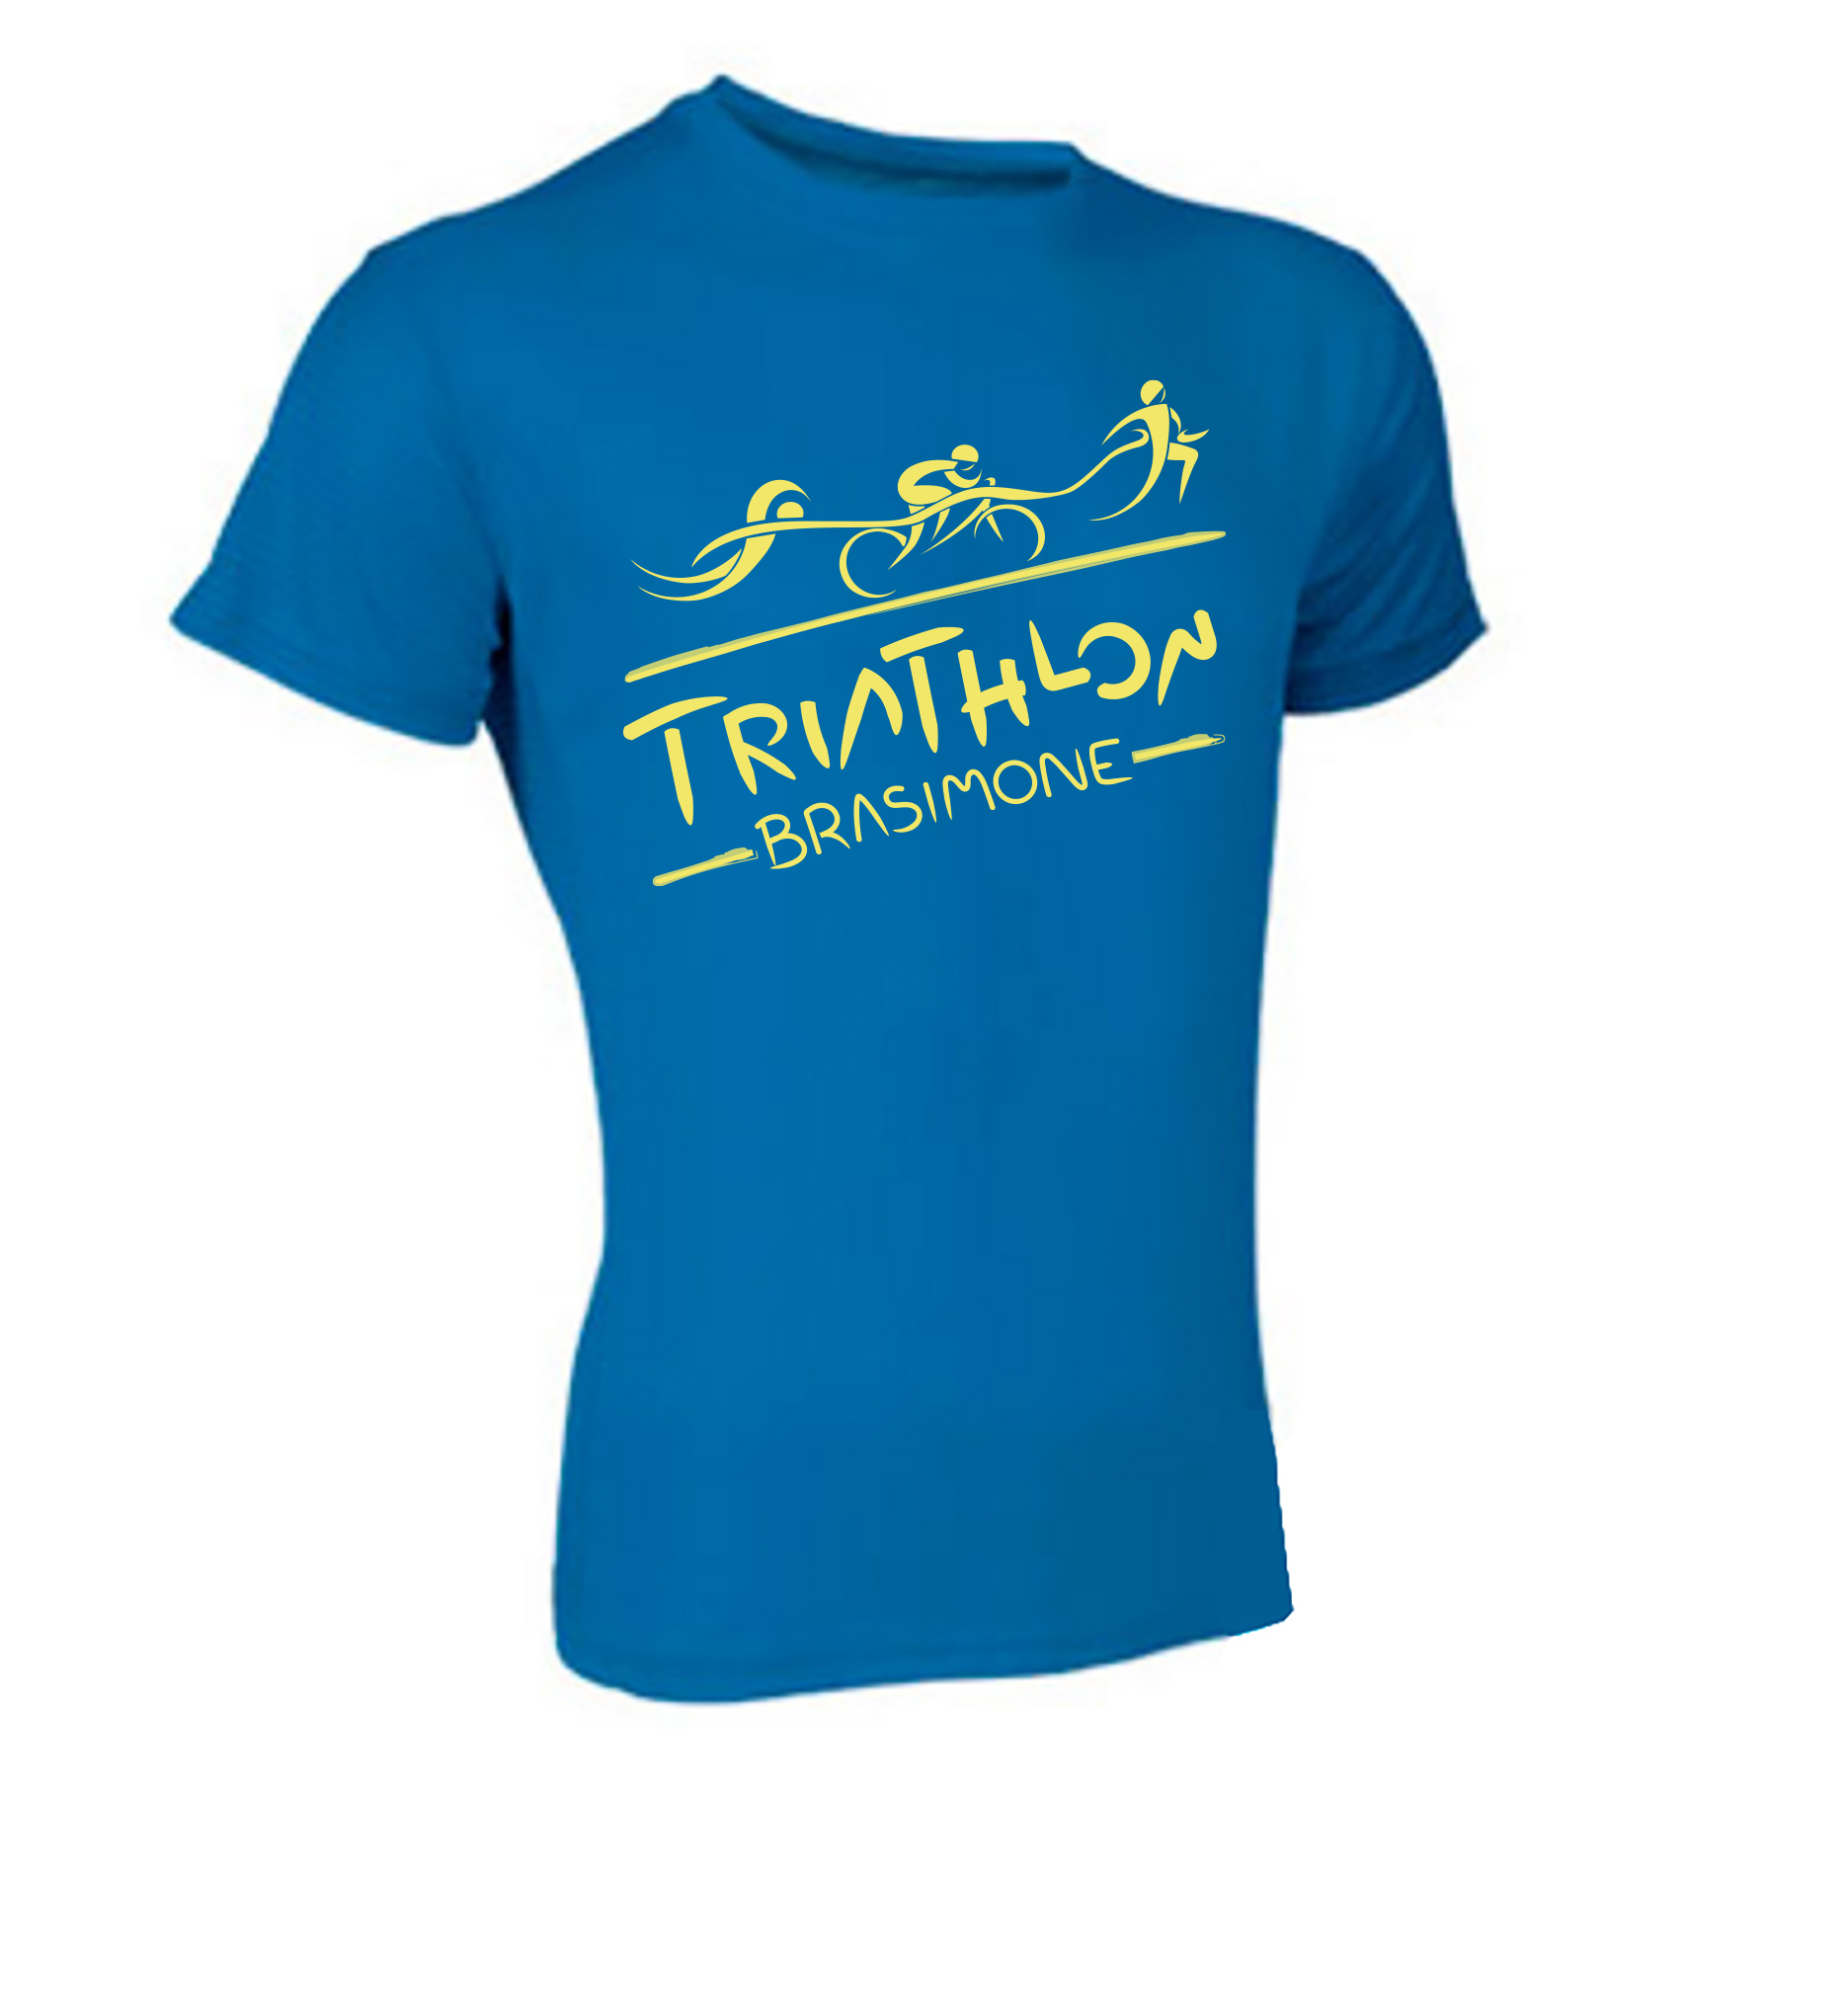 images/2016/News_2016/gare_2016/tri_evolution/T-shirt_Brasimone_Triathlon.jpg